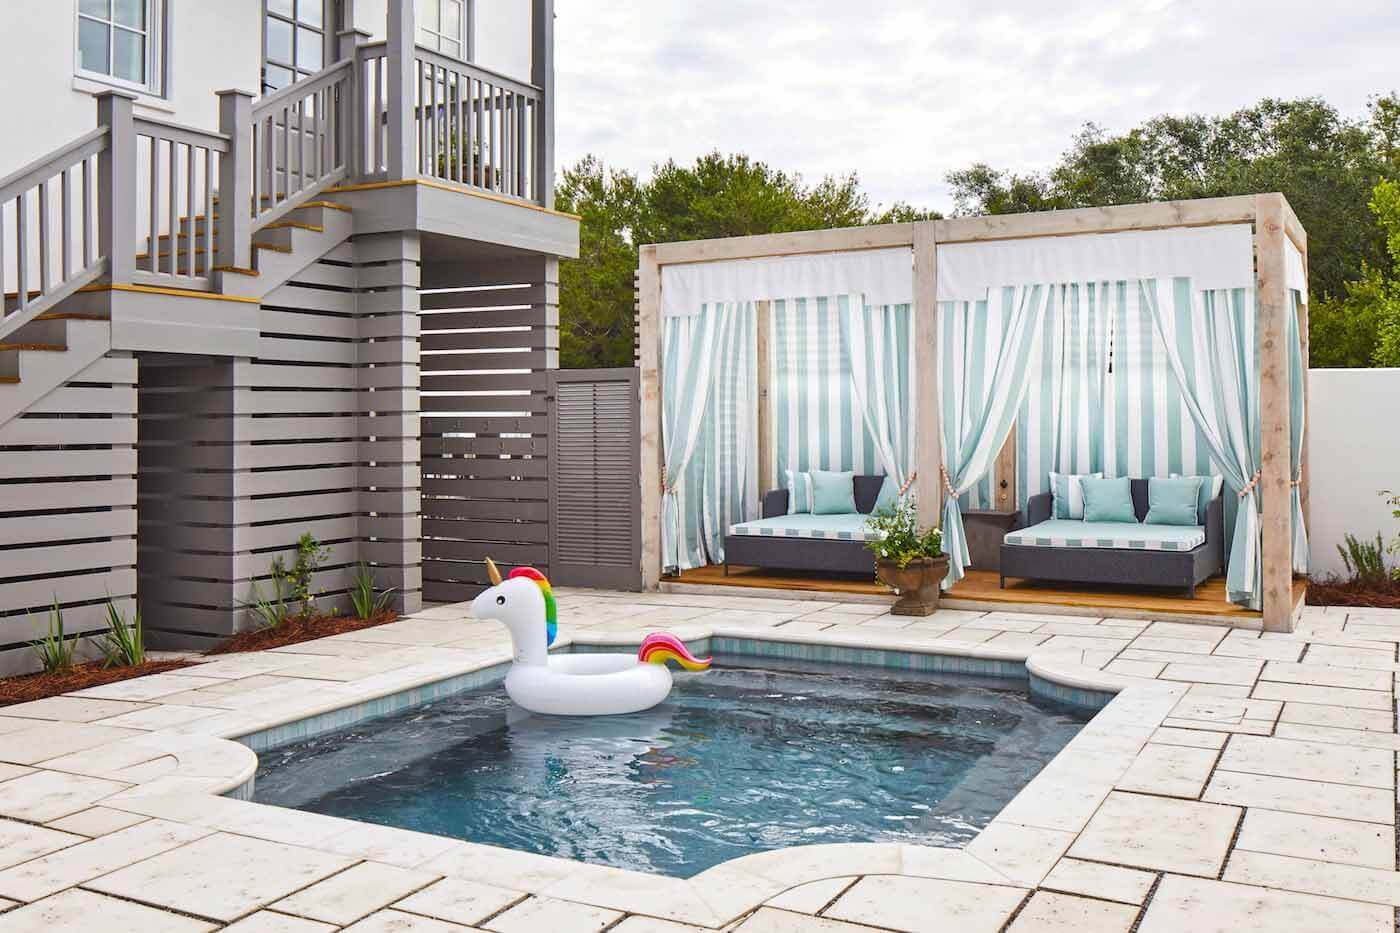 Backyard pool with unicorn floatie